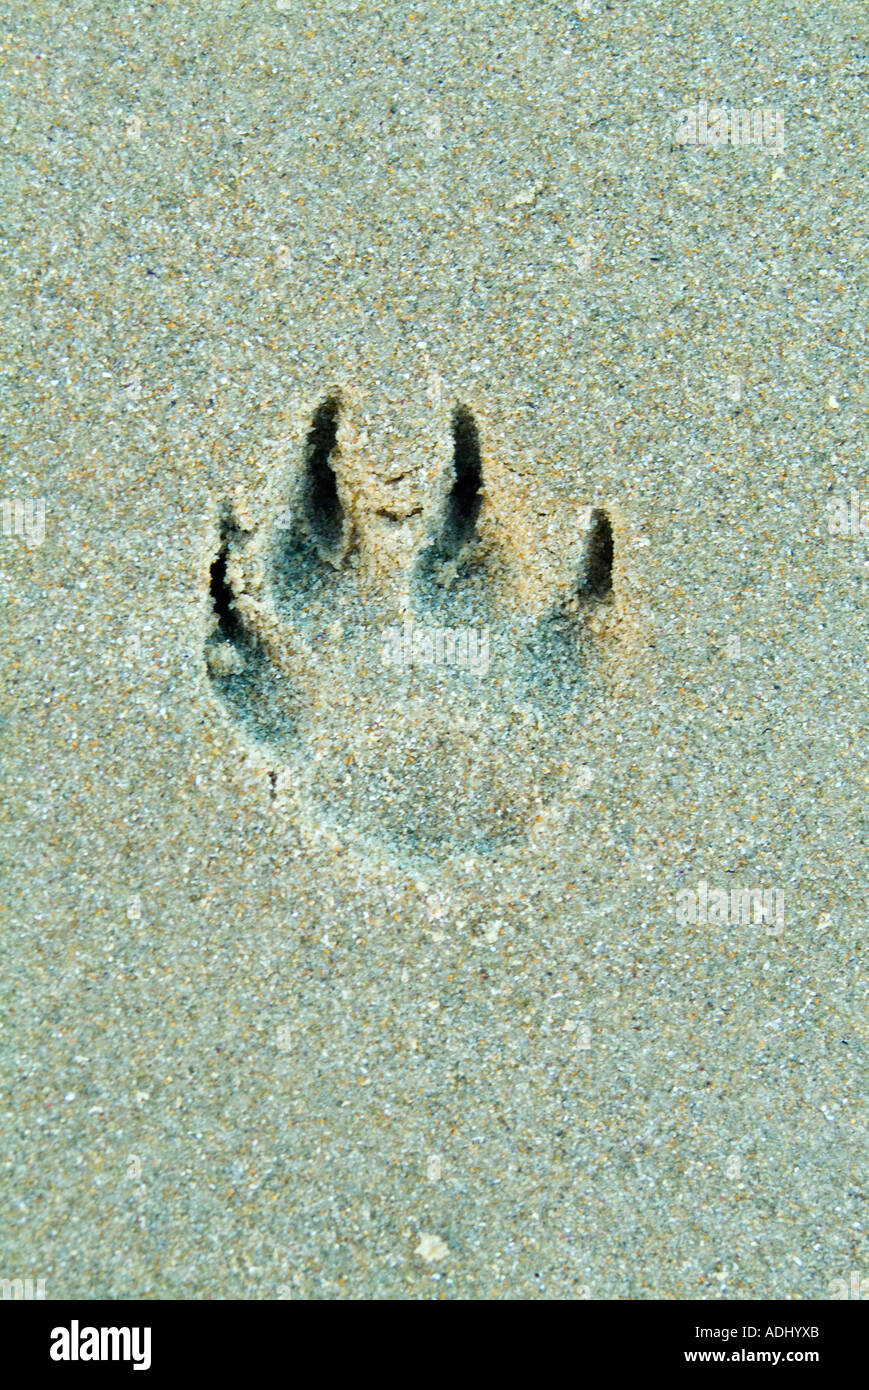 Dog Footprints in sand Banque D'Images